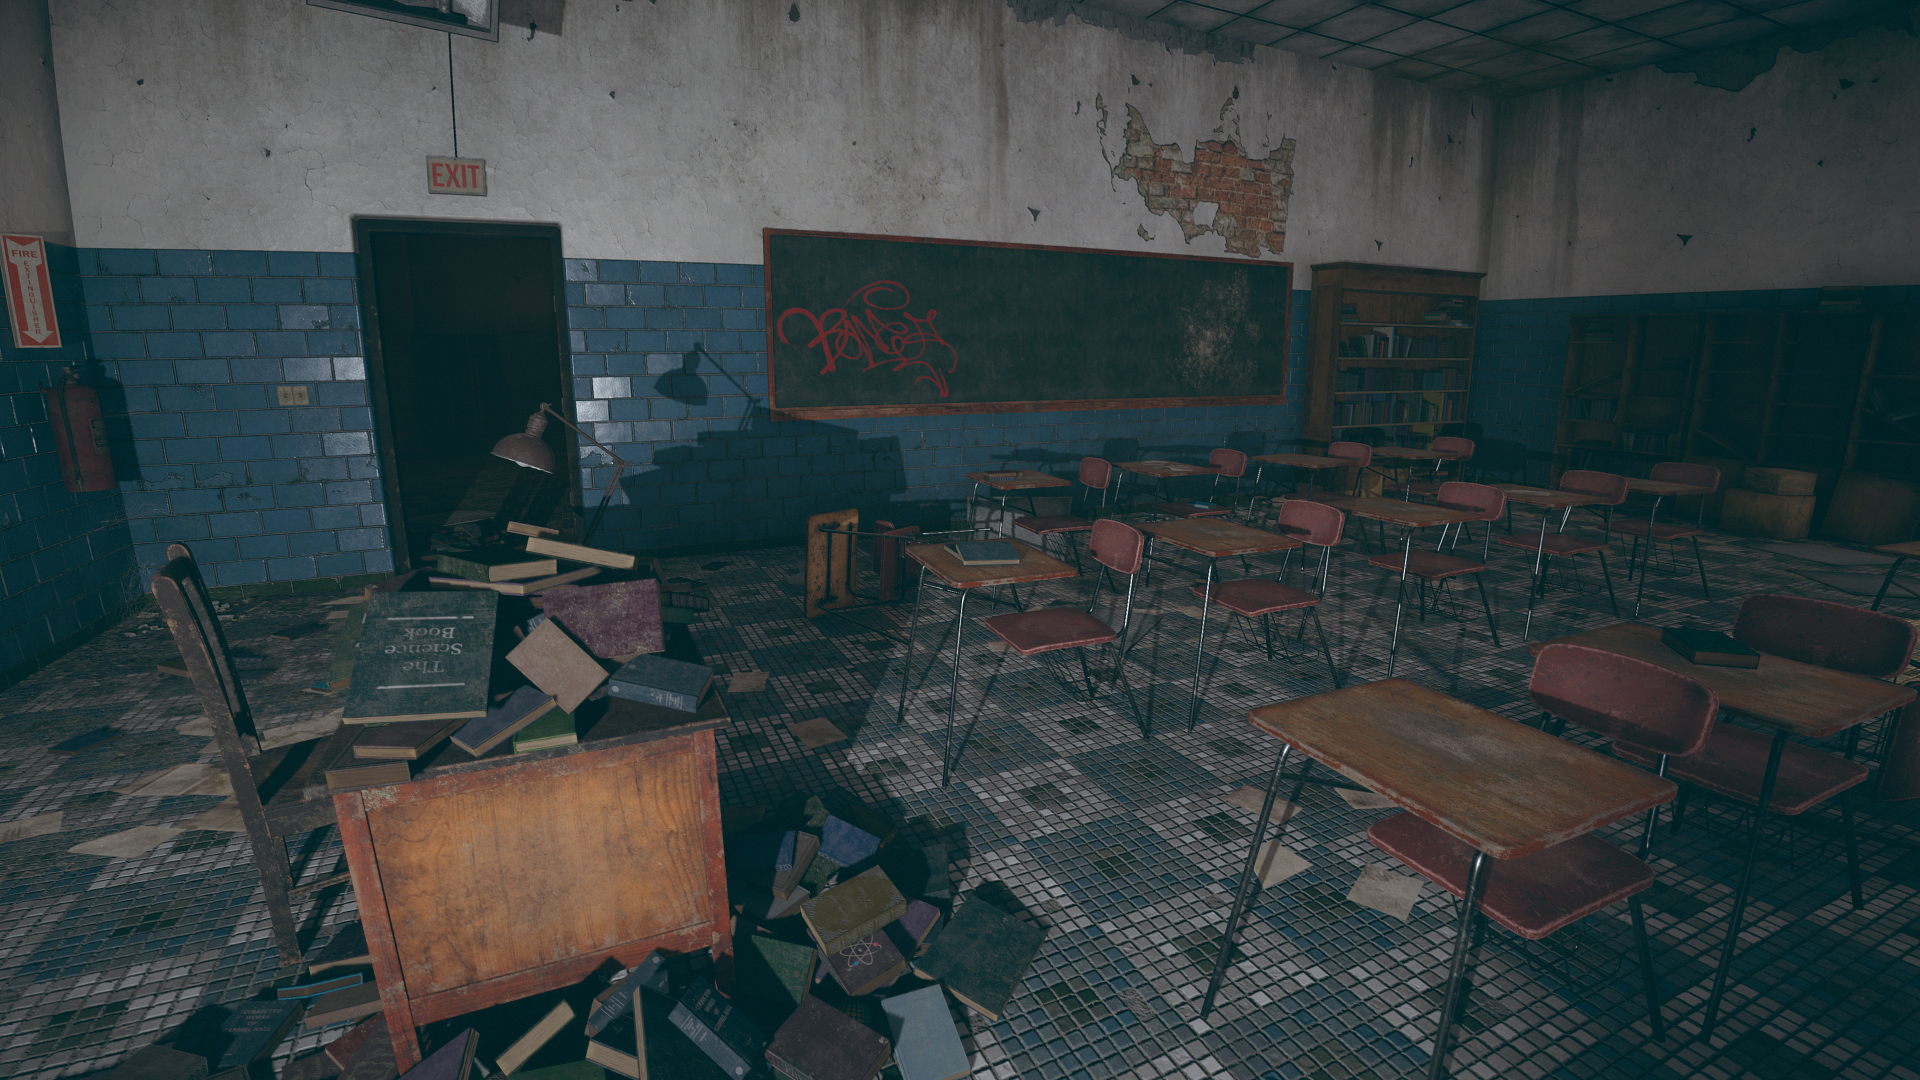 HQ Abandoned School (modular)